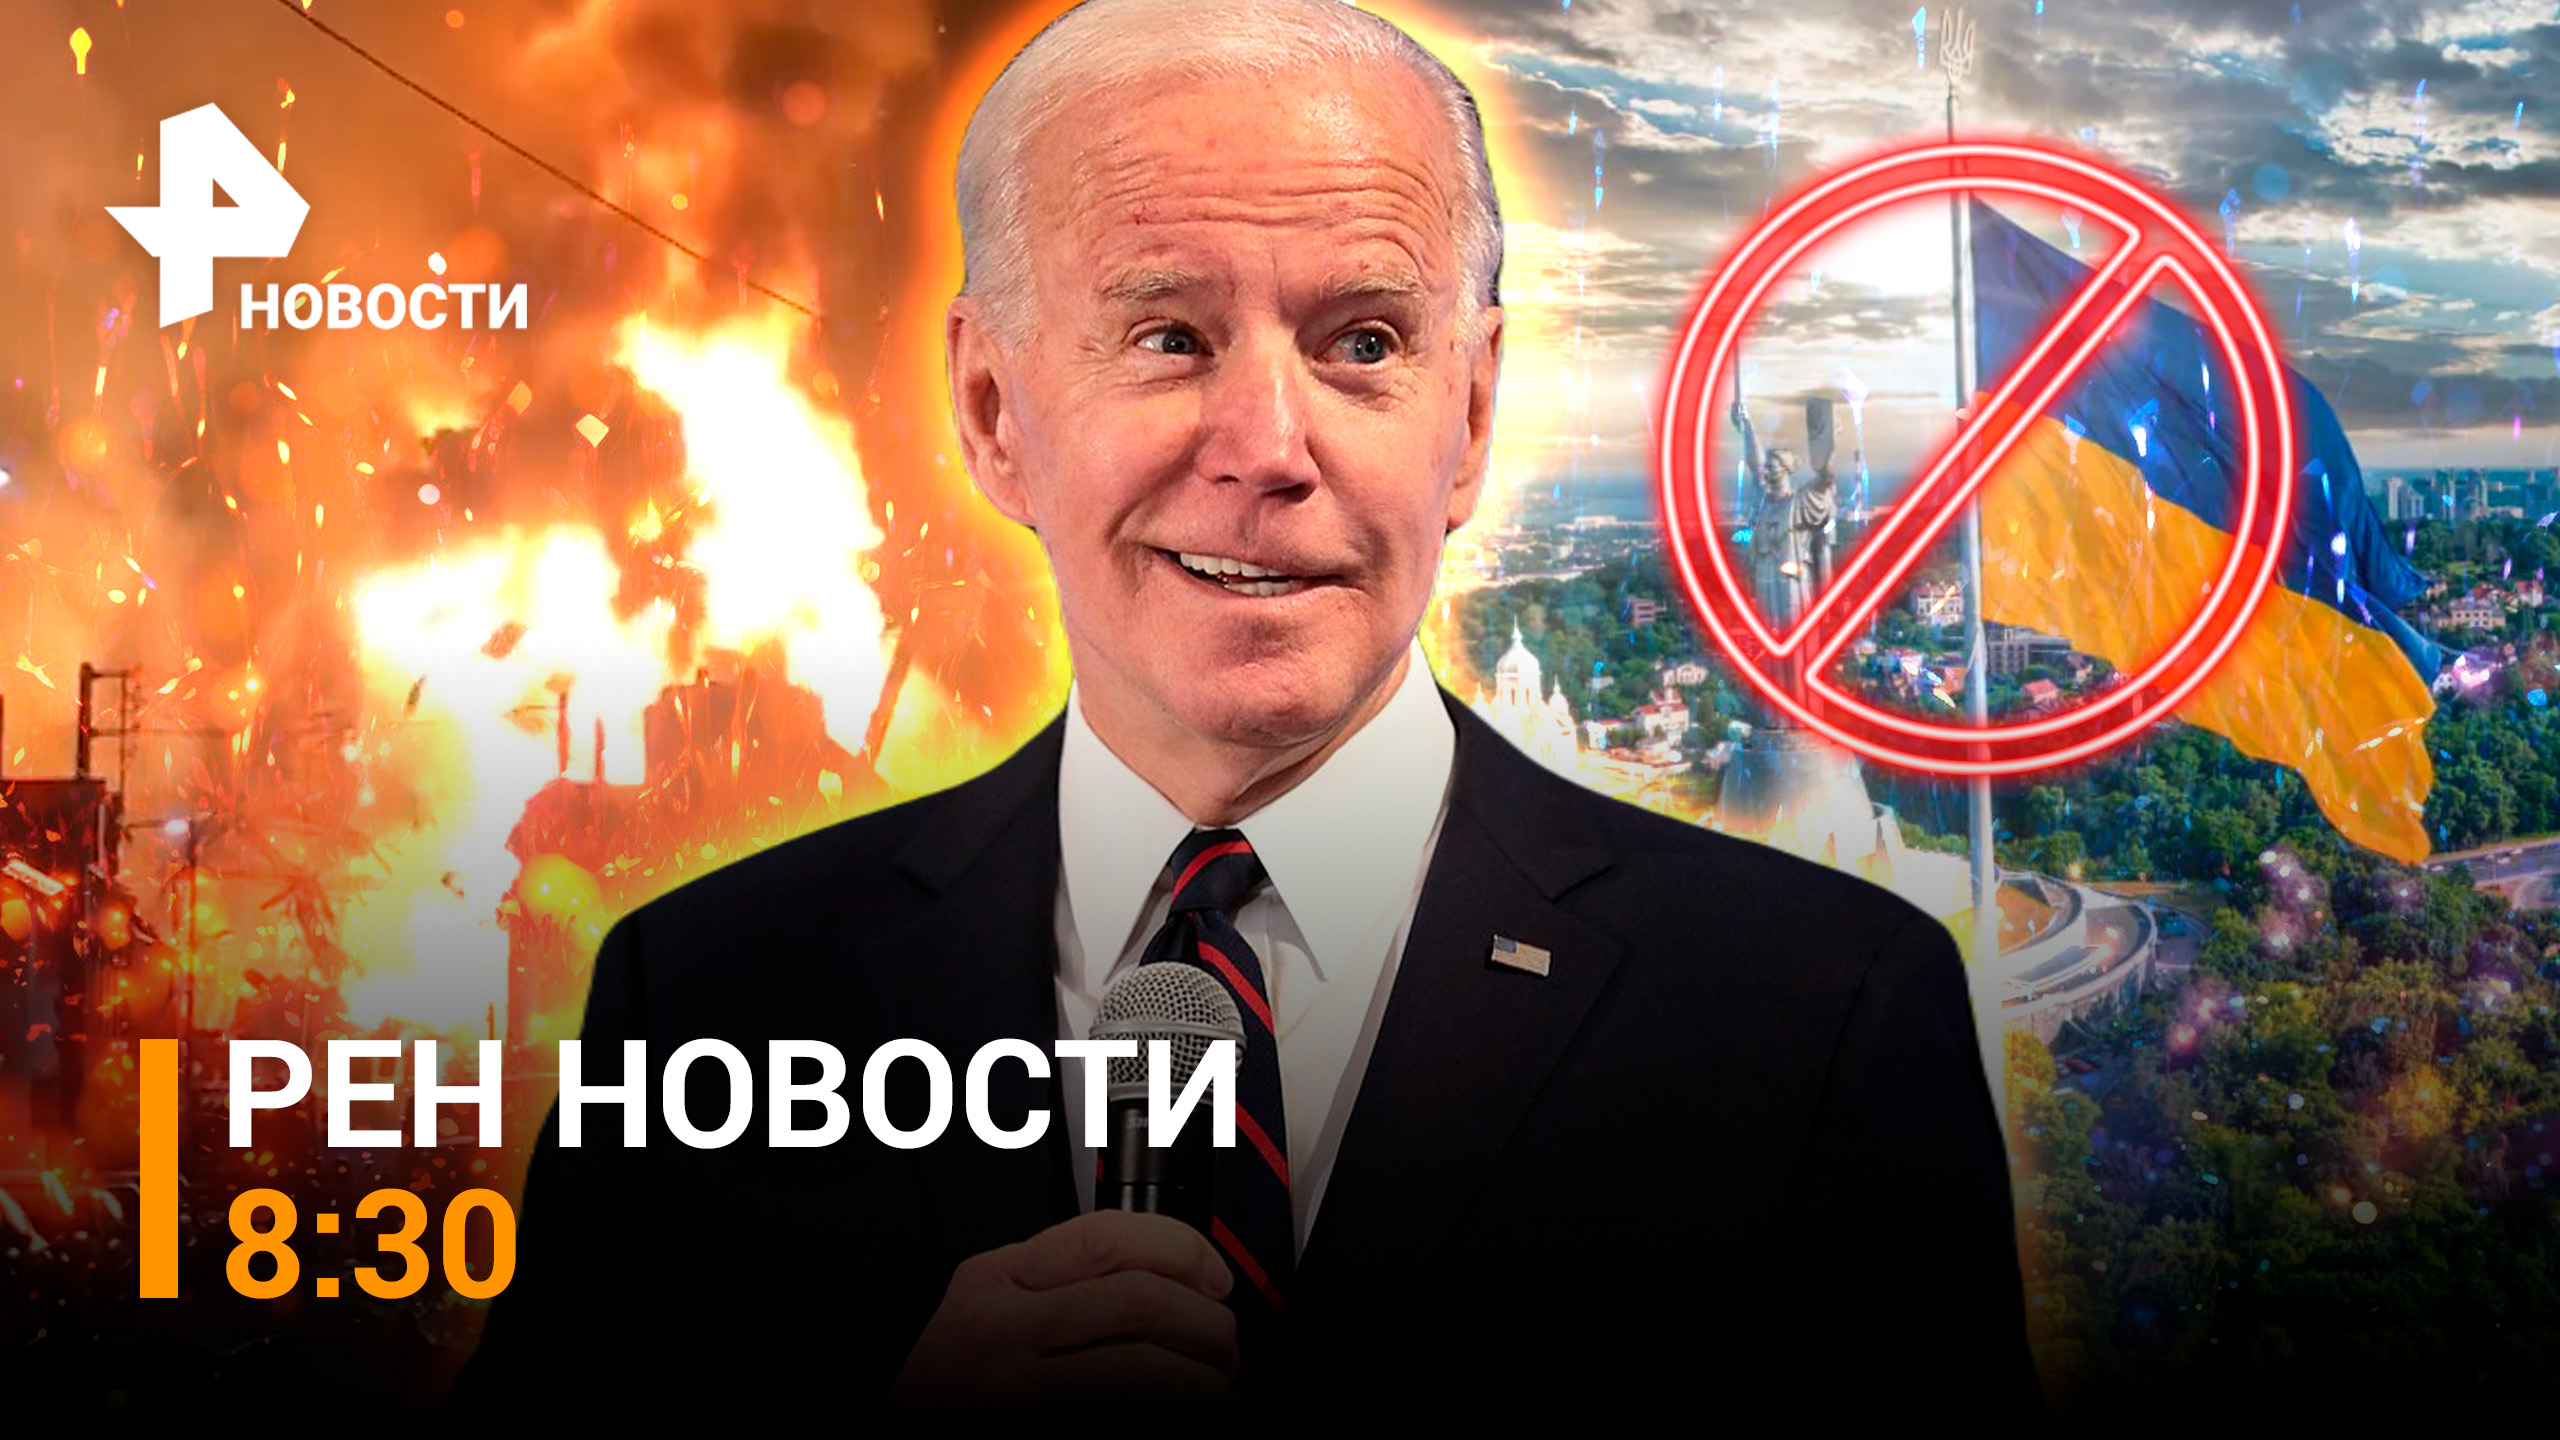 США оставили Украину "без денег". Мощный пожар в Дагестане: сгорели дома / РЕН Новости 8:30 от 28.09